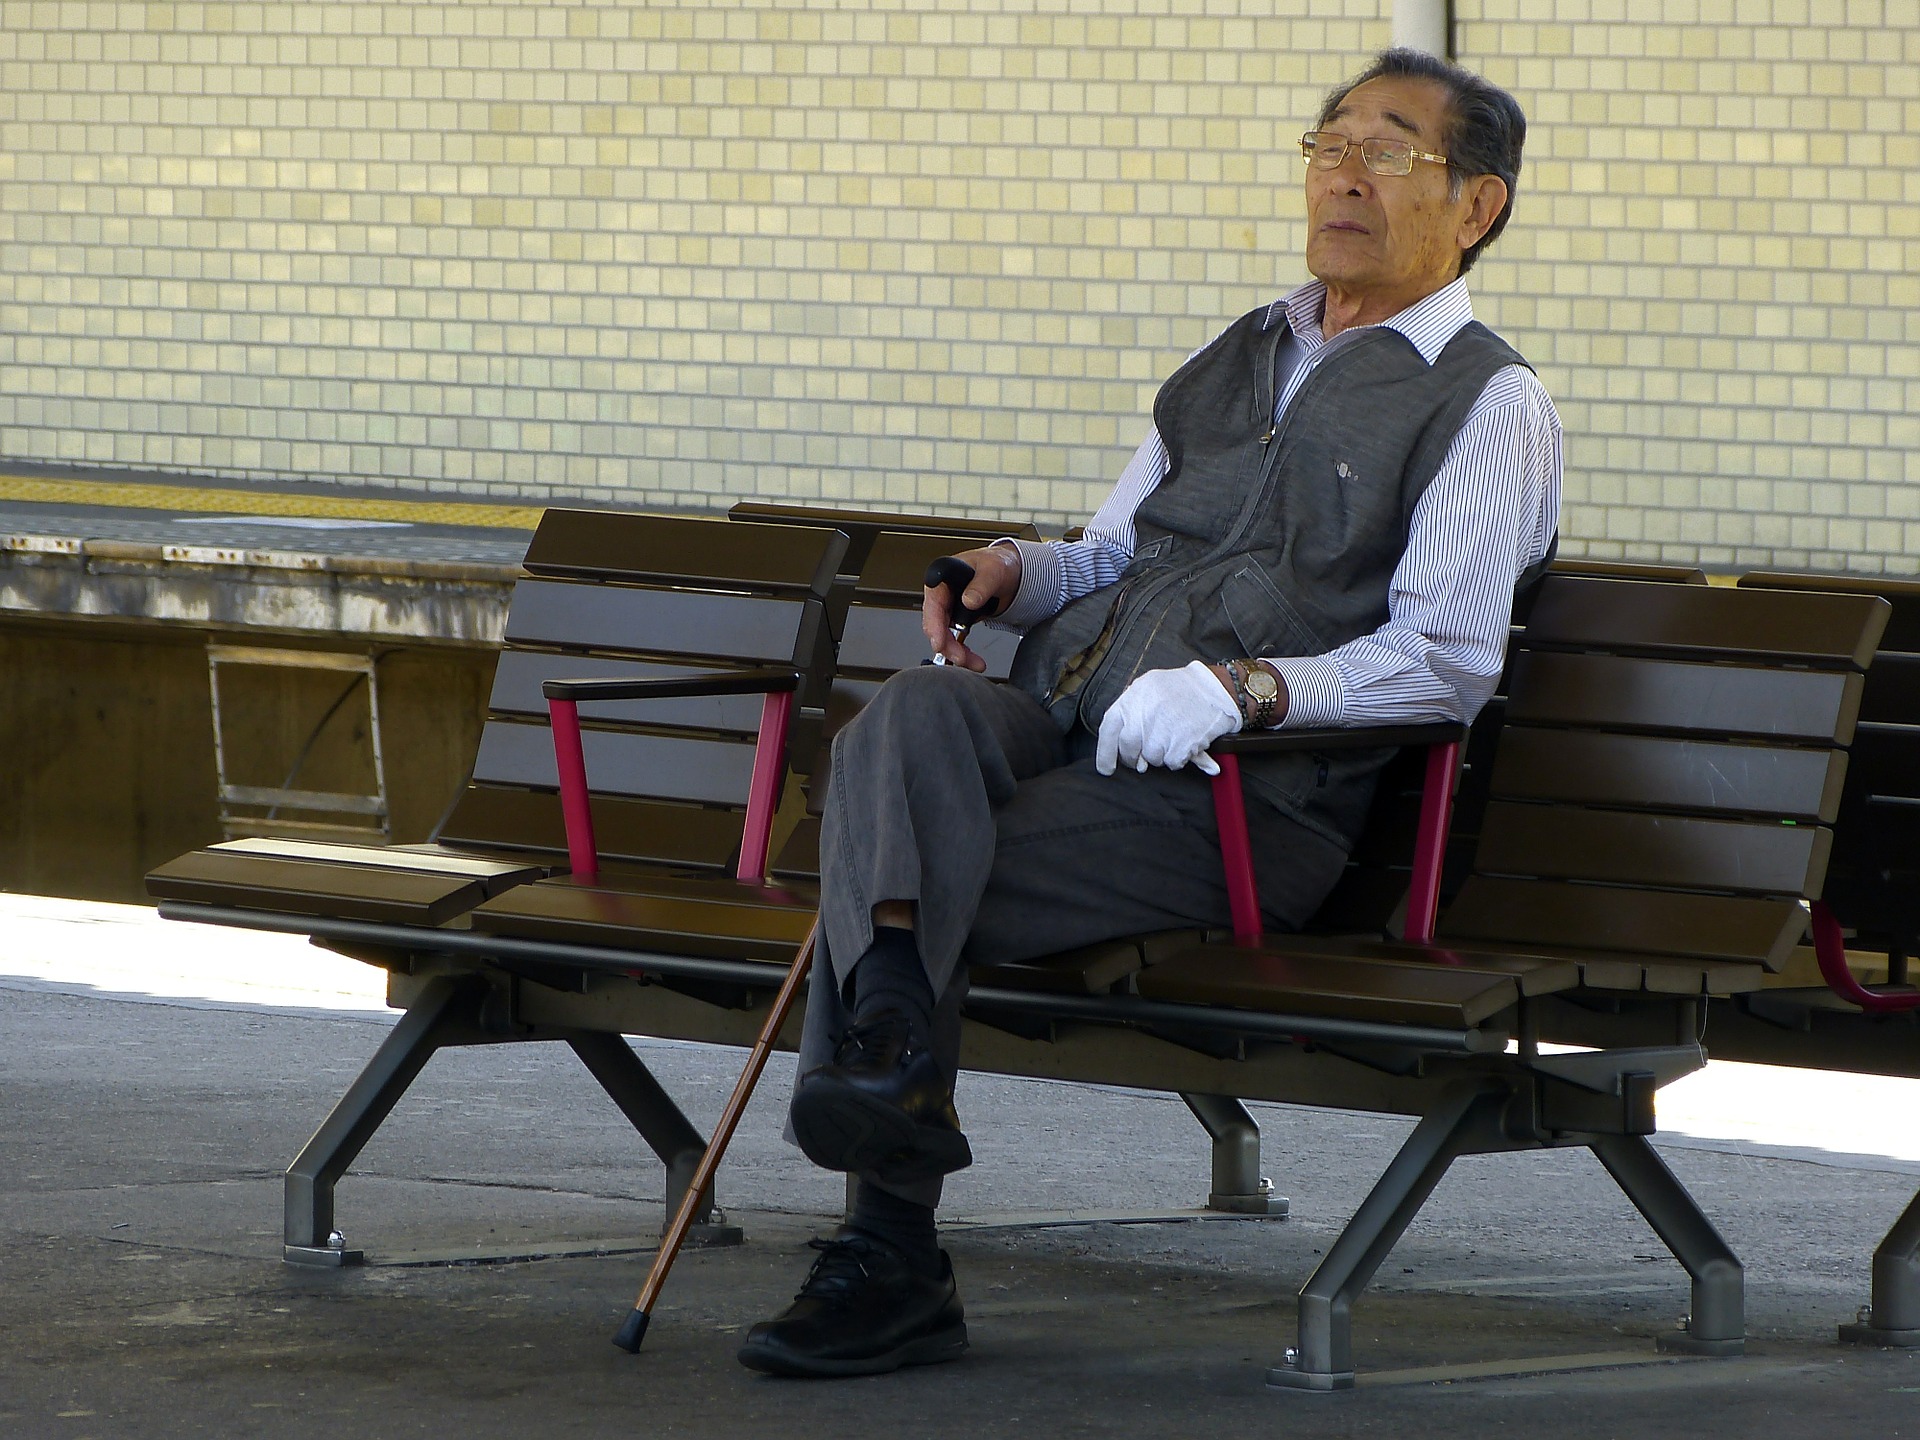 对退休后财务稳定的担忧促使日本人转向私人养老金